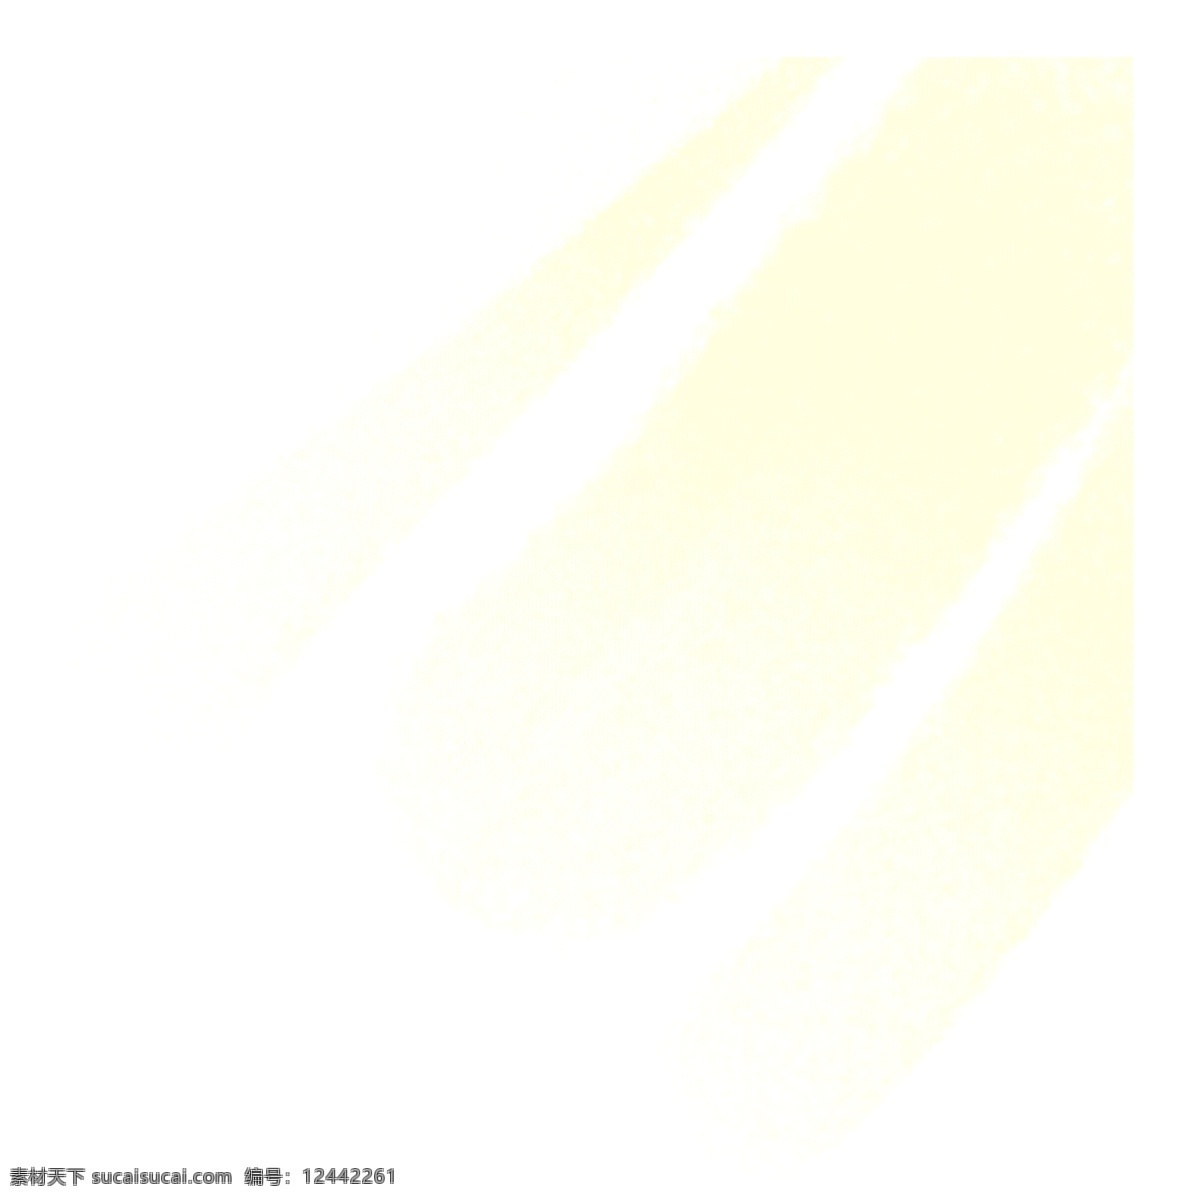 窗外阳光光束 光线 光束 黄色 黄色光线 黄色光束 手绘光束 手绘阳光 阳光 阳光光束